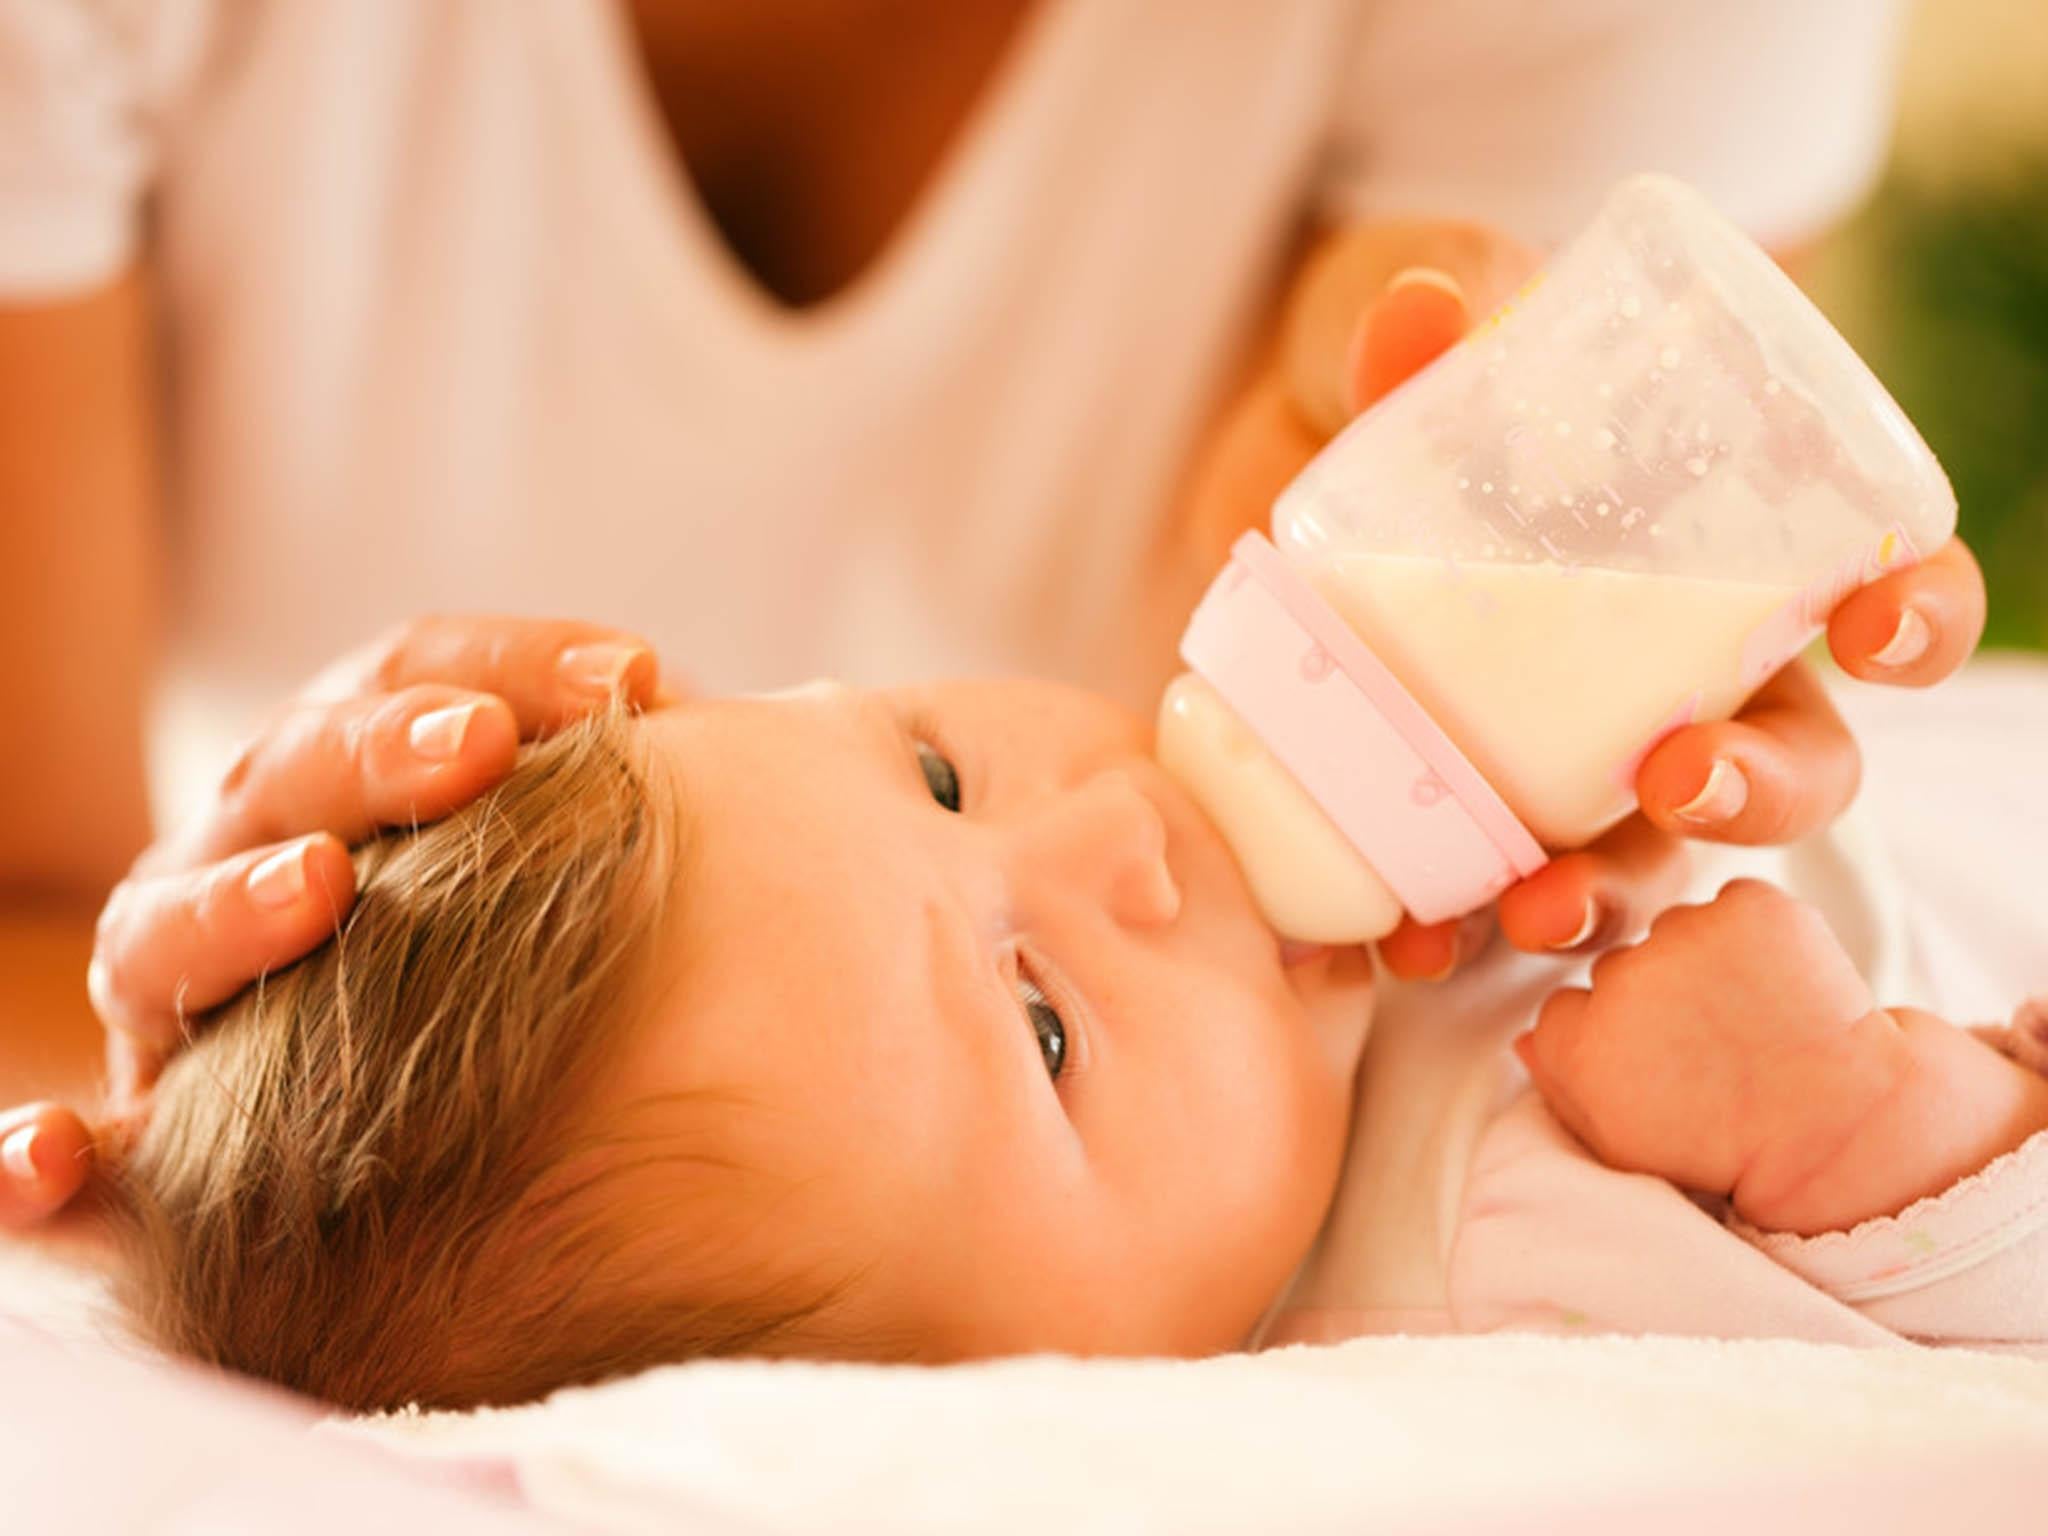 Что можно пить новорожденному